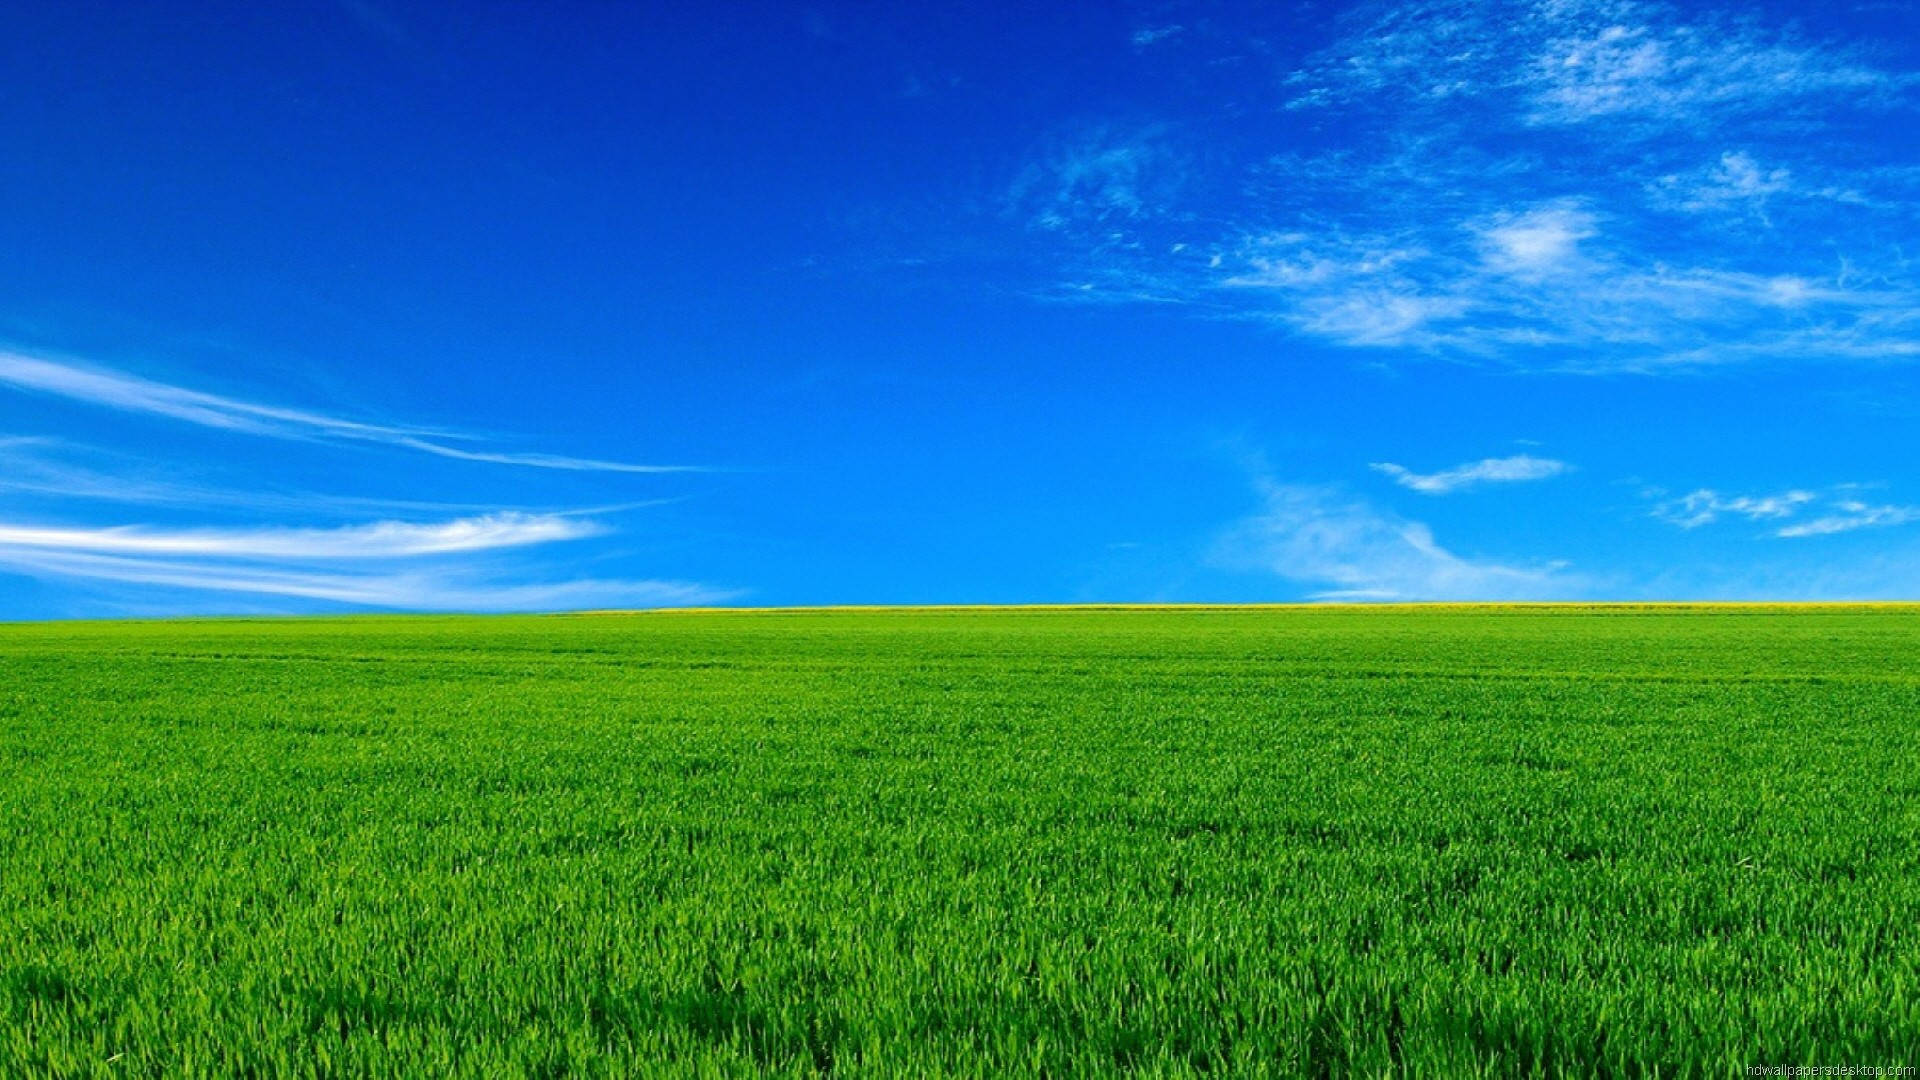 1920x1080 Full Hd Nature Green Grass Blue Sky Wallpaper